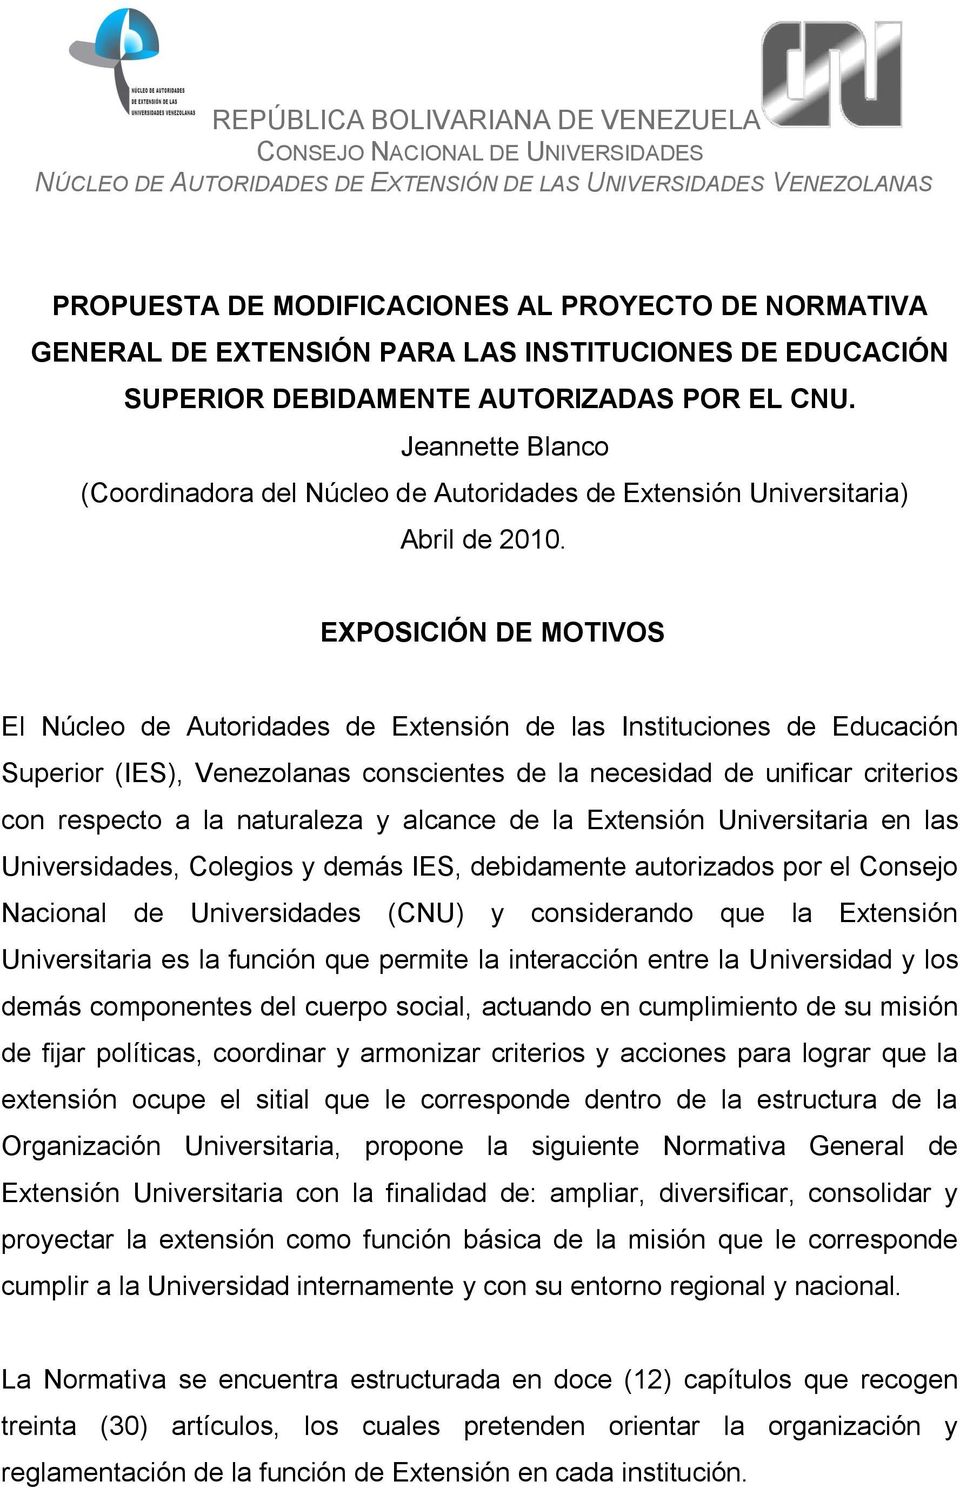 EXPOSICIÓN DE MOTIVOS El Núcleo de Autoridades de Extensión de las Instituciones de Educación Superior (IES), Venezolanas conscientes de la necesidad de unificar criterios con respecto a la